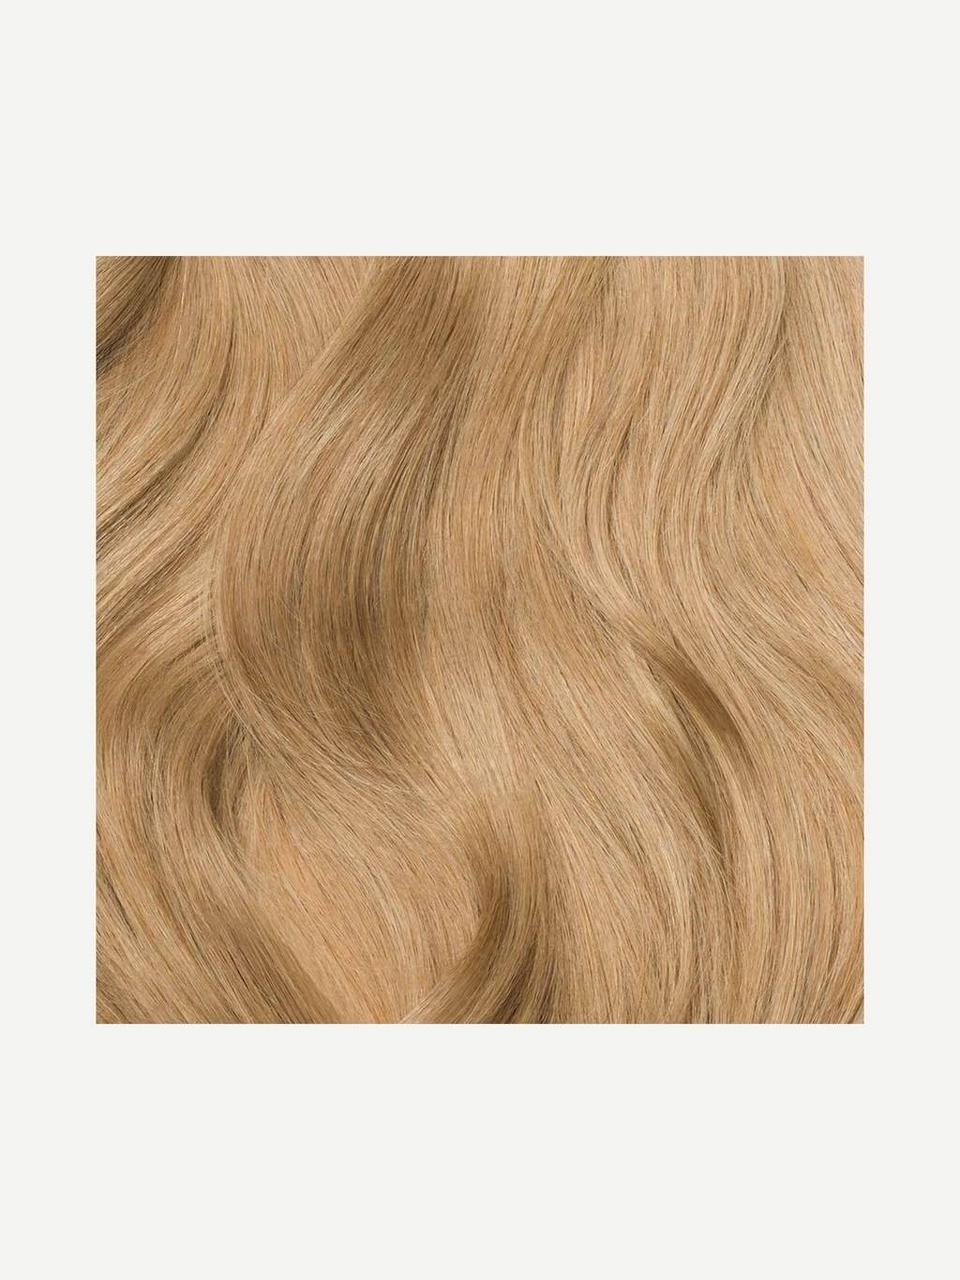 Волосся для нарощування Luxy Hair Dirty Blonde 18 натуральне 110 грамм (в пакете)